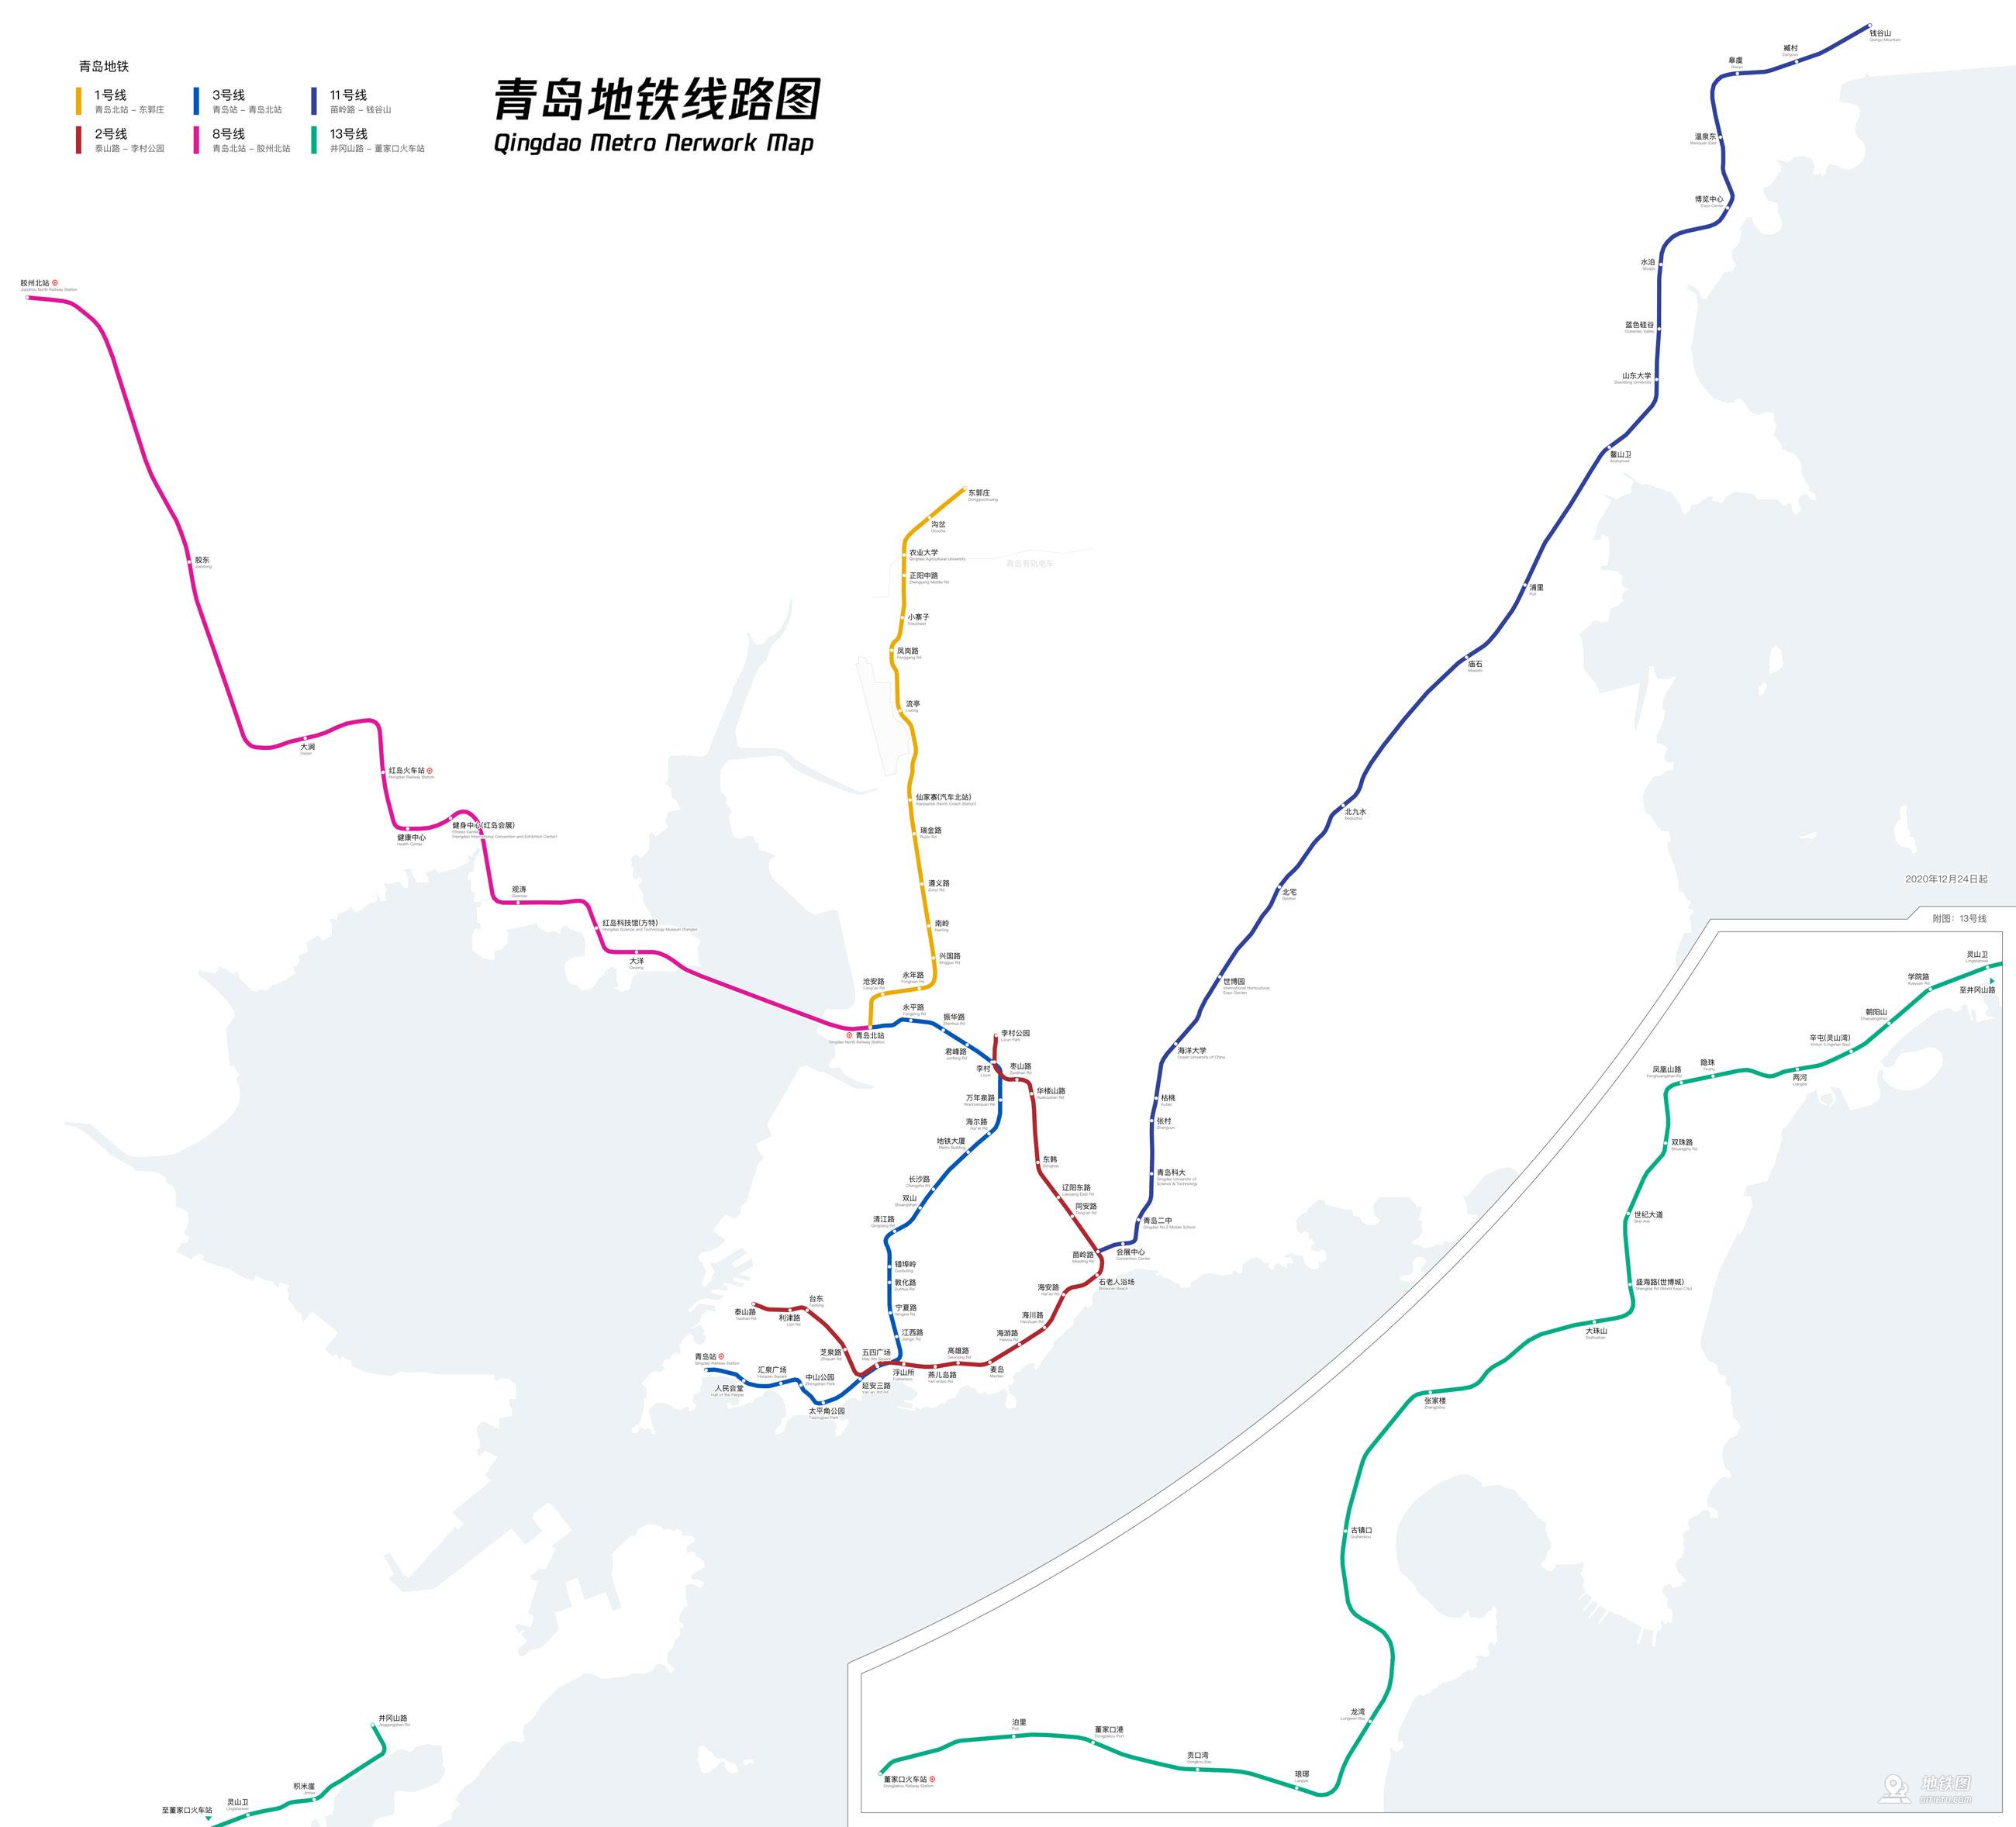 青岛地铁线路图 m15图片